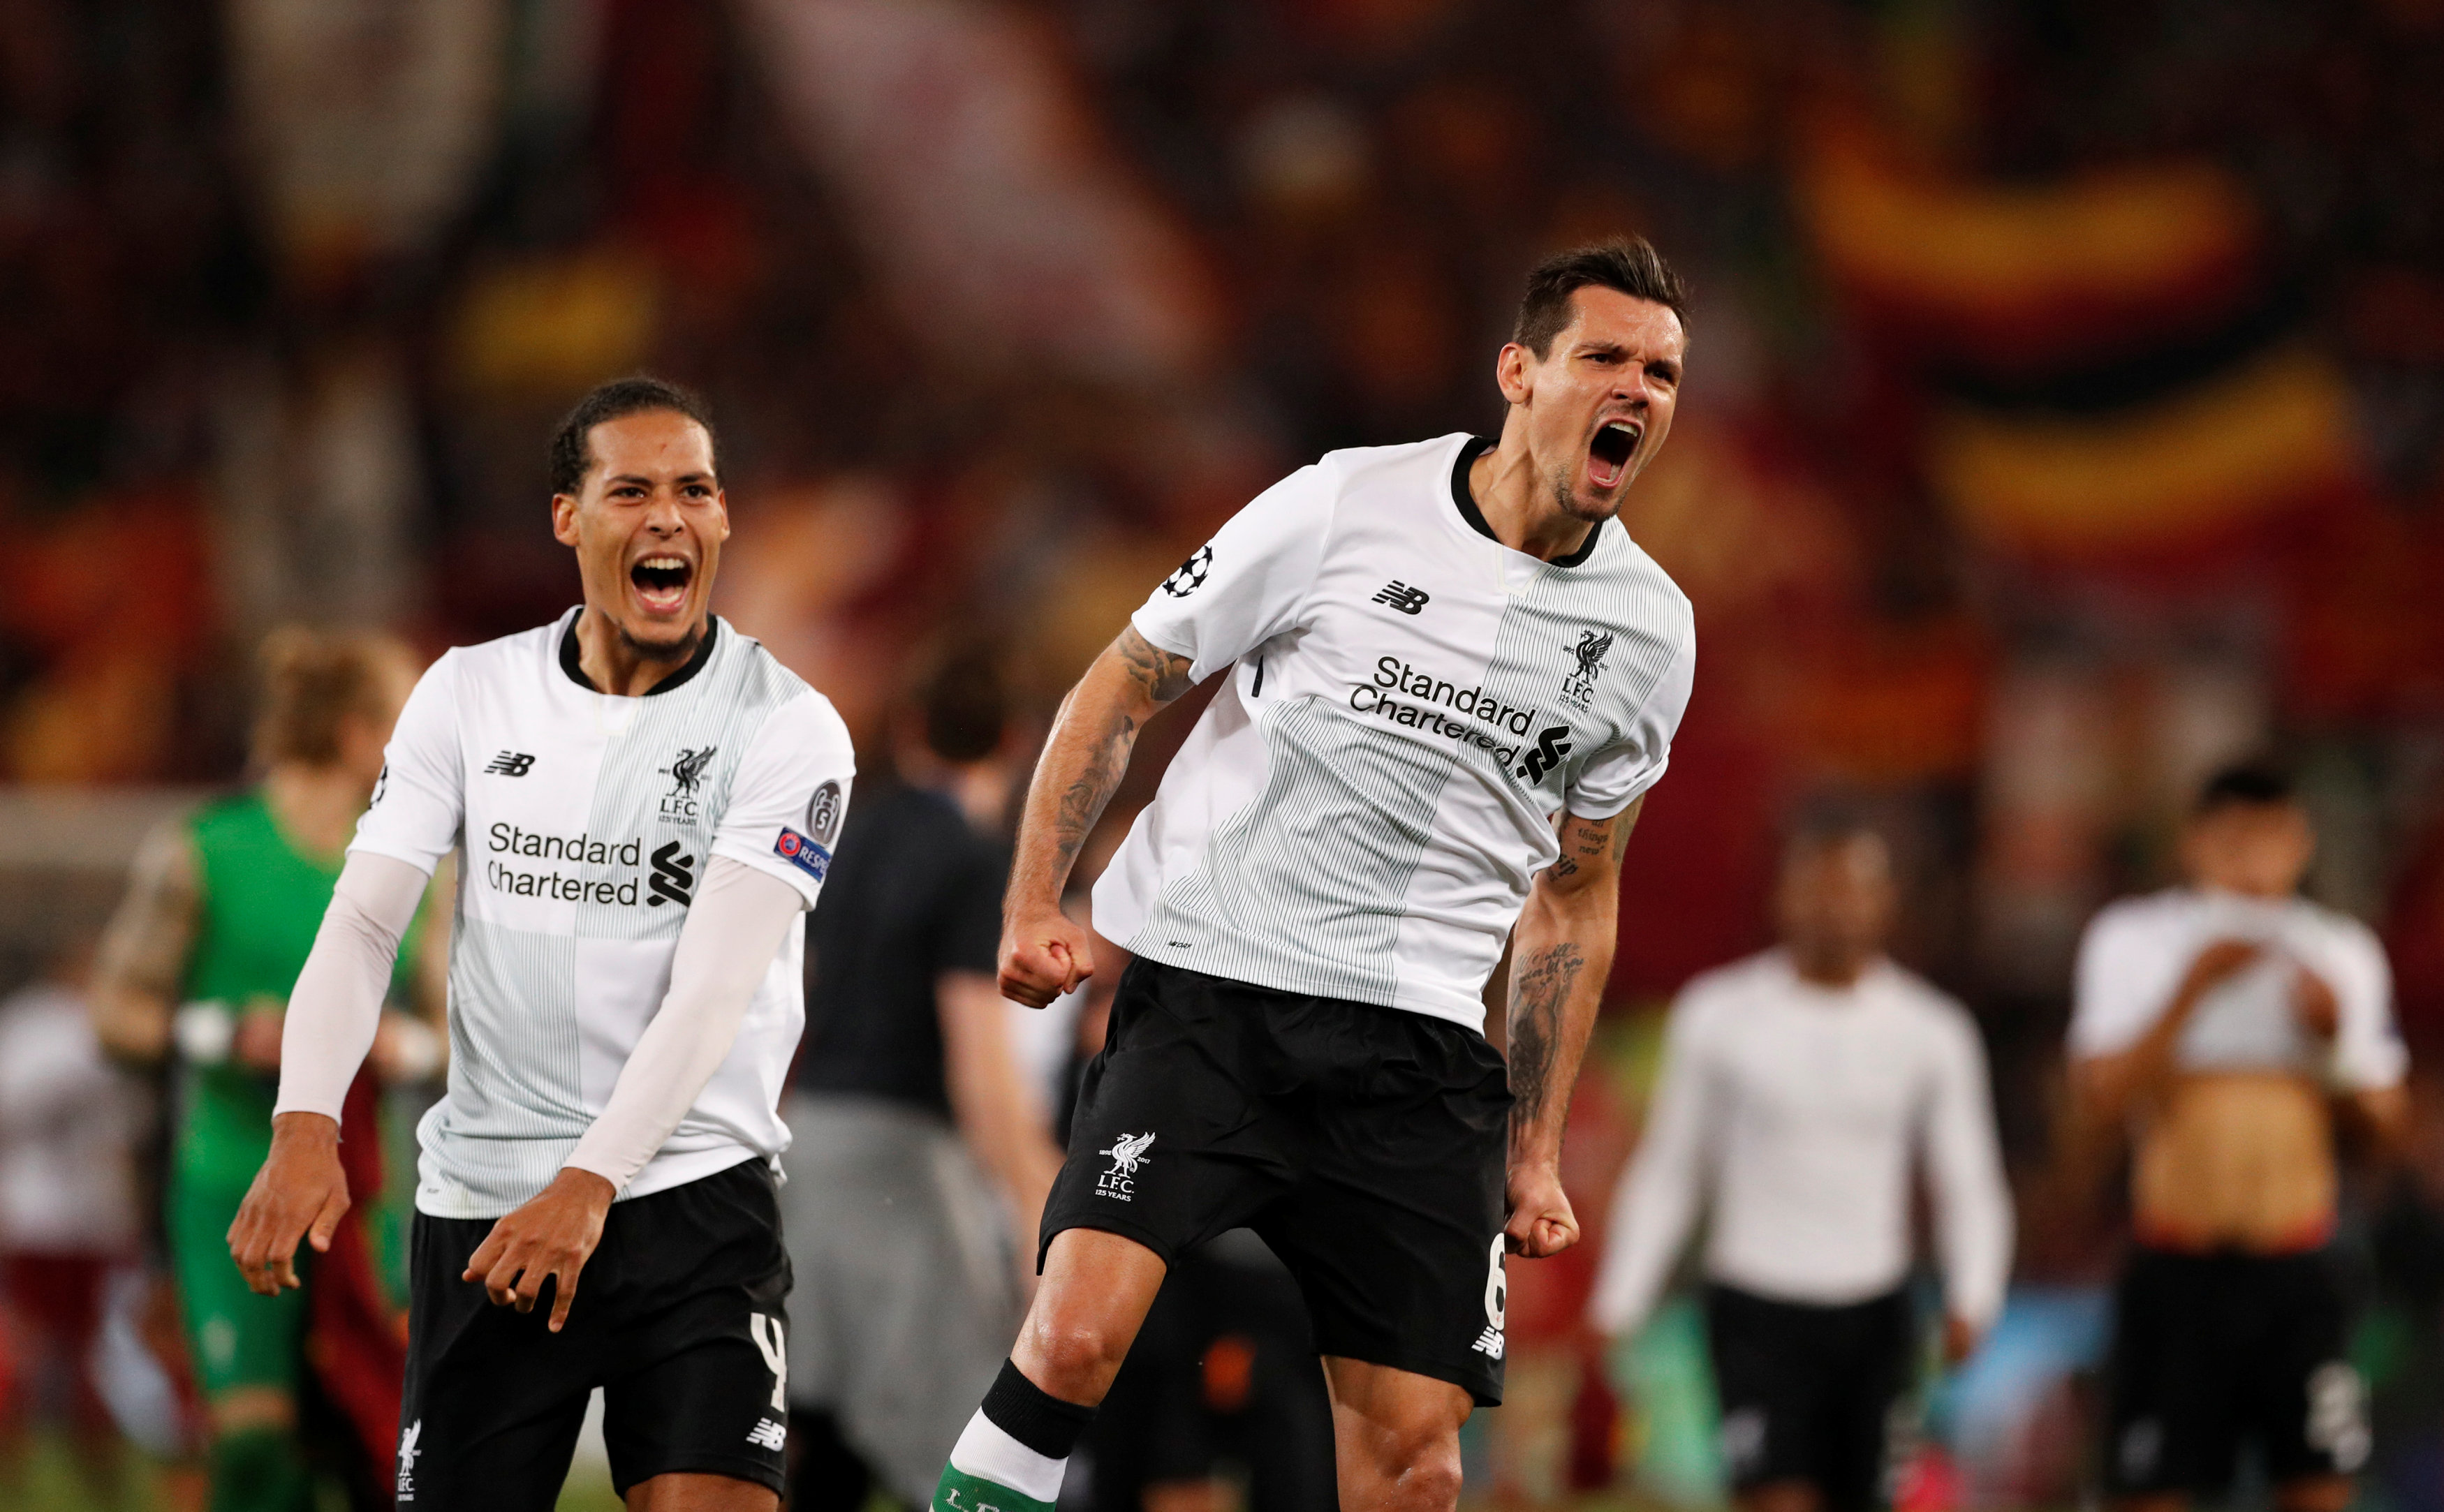 Niềm vui của các cầu thủ Liverpool sau khi đoạt vé vào chung kết. Ảnh: REUTERS